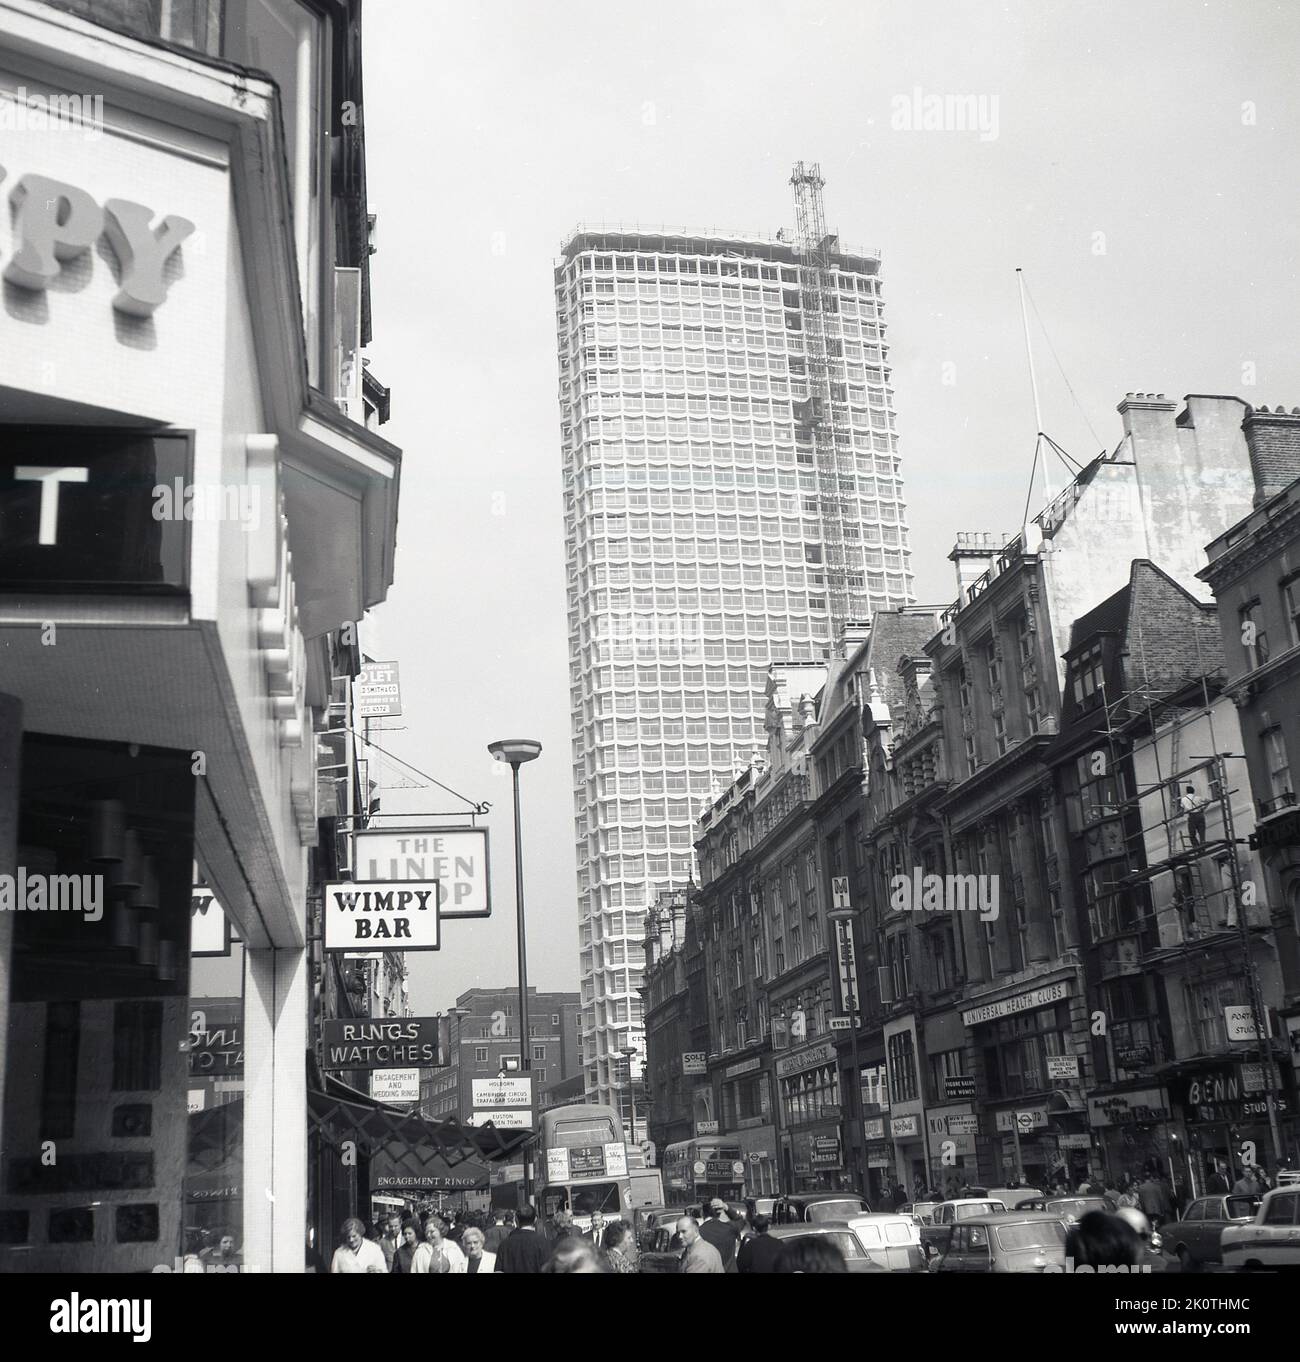 1966, historisches Bild aus dieser Ära des modernen Tower Blocks, Centre Point in Central London, England, UK, an der 101-103 New Oxford Street. Der 34-stöckige Turm, der „modernistisch“ im Stil und aus Betonfertigteilen gebaut war, war einer der ersten Wolkenkratzer in London. Das Gebäude wurde zwischen 1963-1966 als Büro errichtet und blieb bis 1975 leer, da der Eigentümer Harry Hymans sich weigerte, einzelne Stockwerke zu vermieten. Das 1969 in Soho gegründete Obdachlosenheim „Centrepoint“ wurde nach dem Turmblock benannt, als Reaktion darauf, dass er leer gelassen wurde. Stockfoto